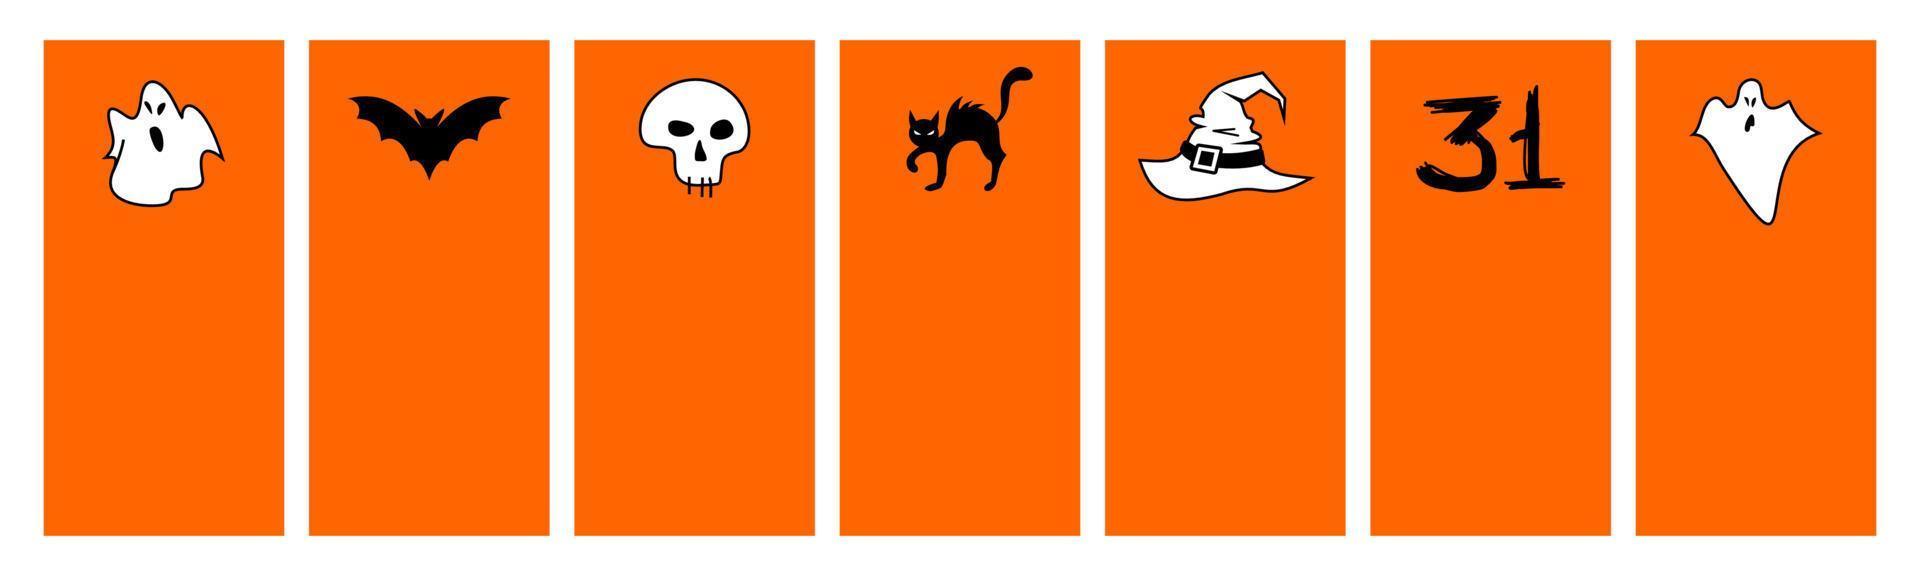 iconos de Halloween. cuadrado colorido de la bandera de halloween - ilustración de estilo plano vectorial. marco, lugar para el texto. murciélago, fantasmas vector